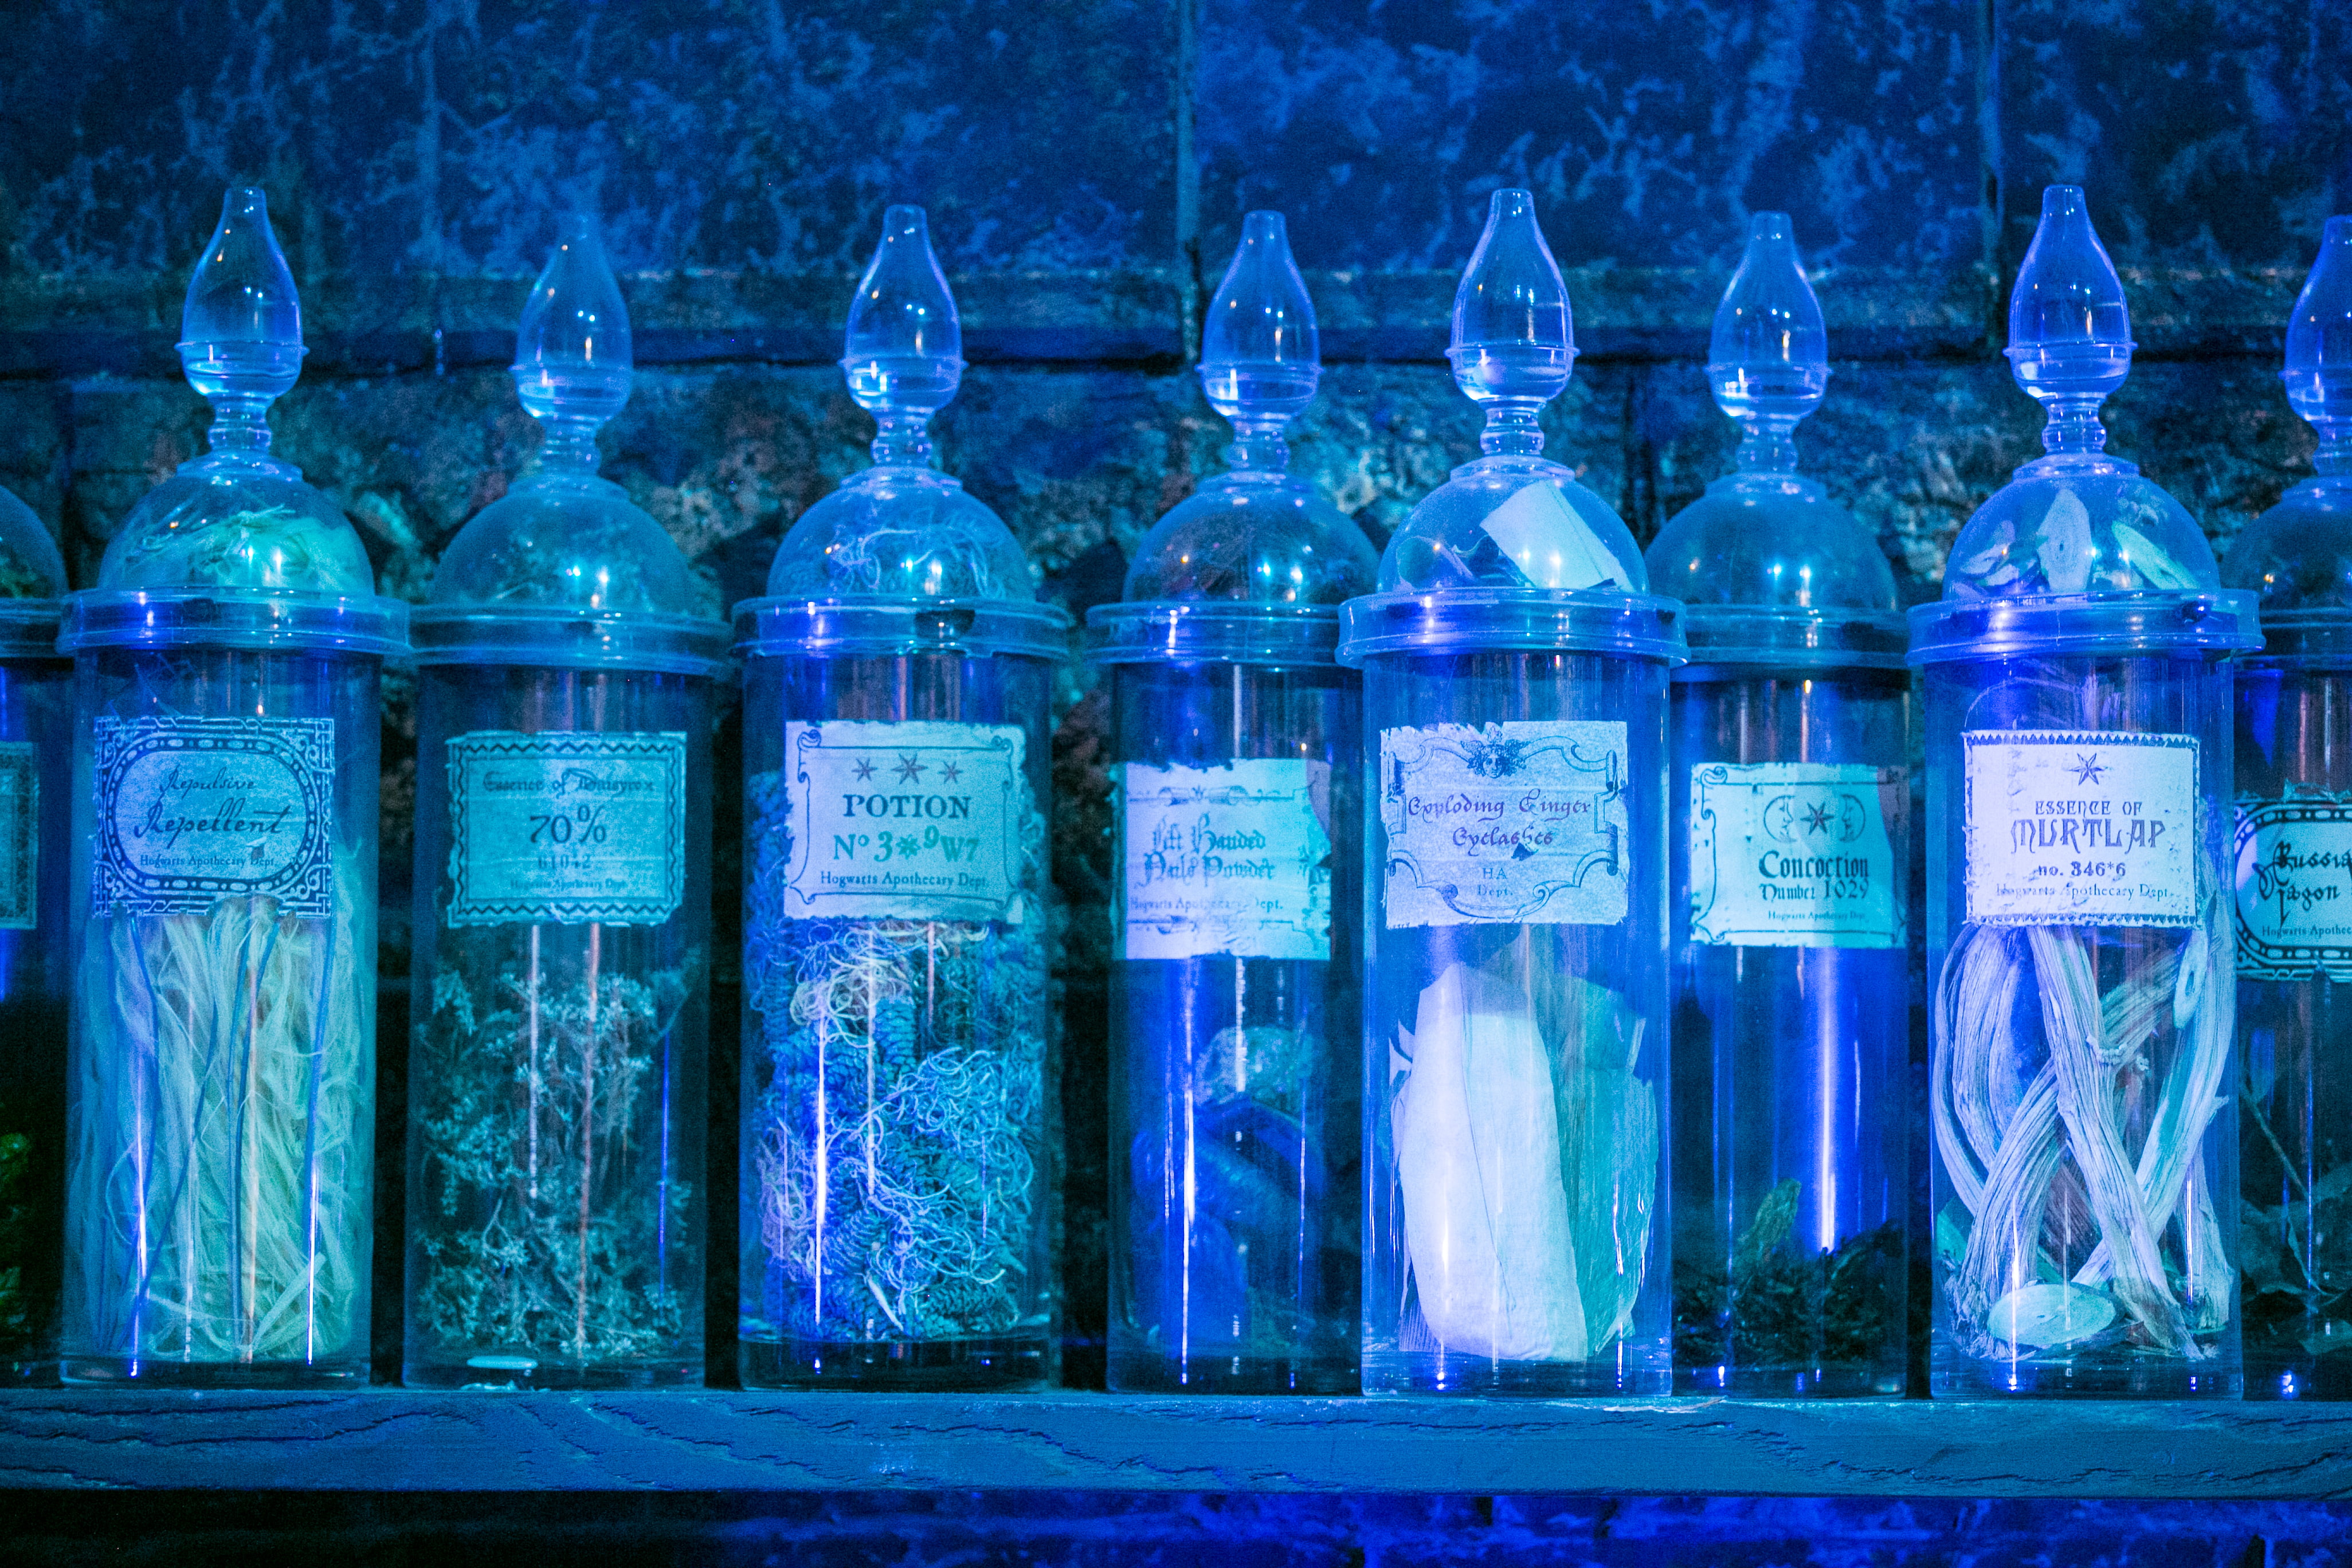 harry-potter-studio-tour-potions-details-potion-bottle